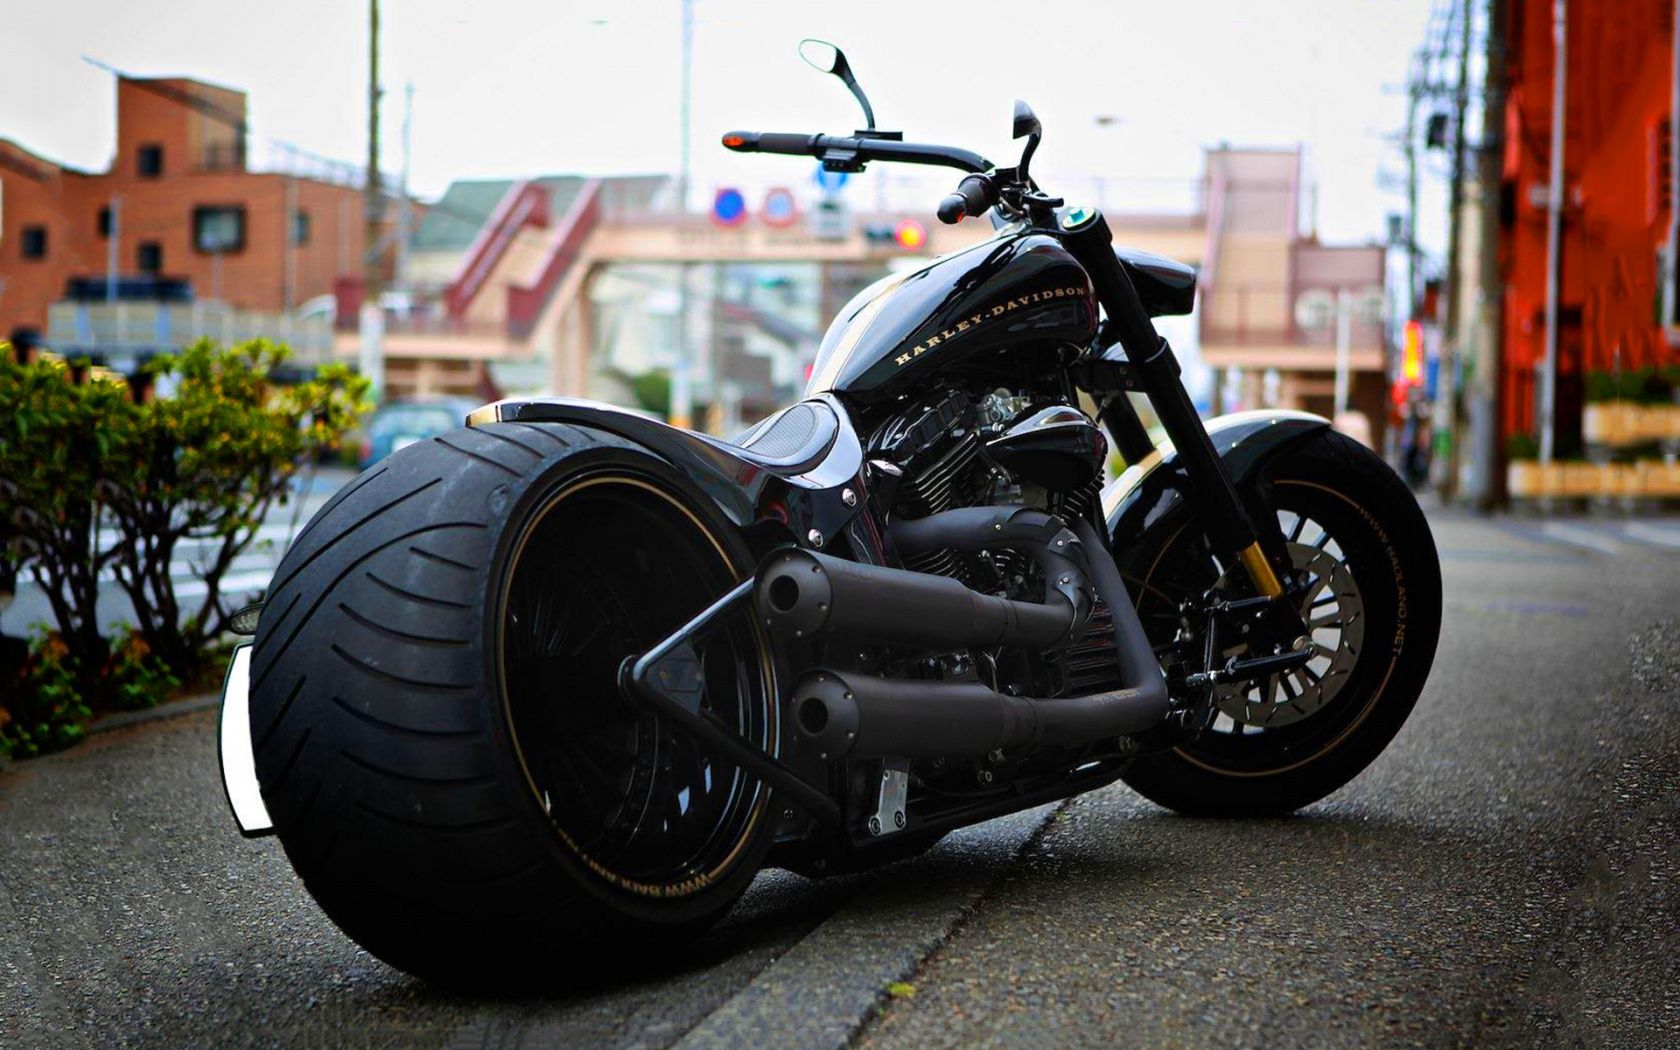 Harley Davidson Backgrounds